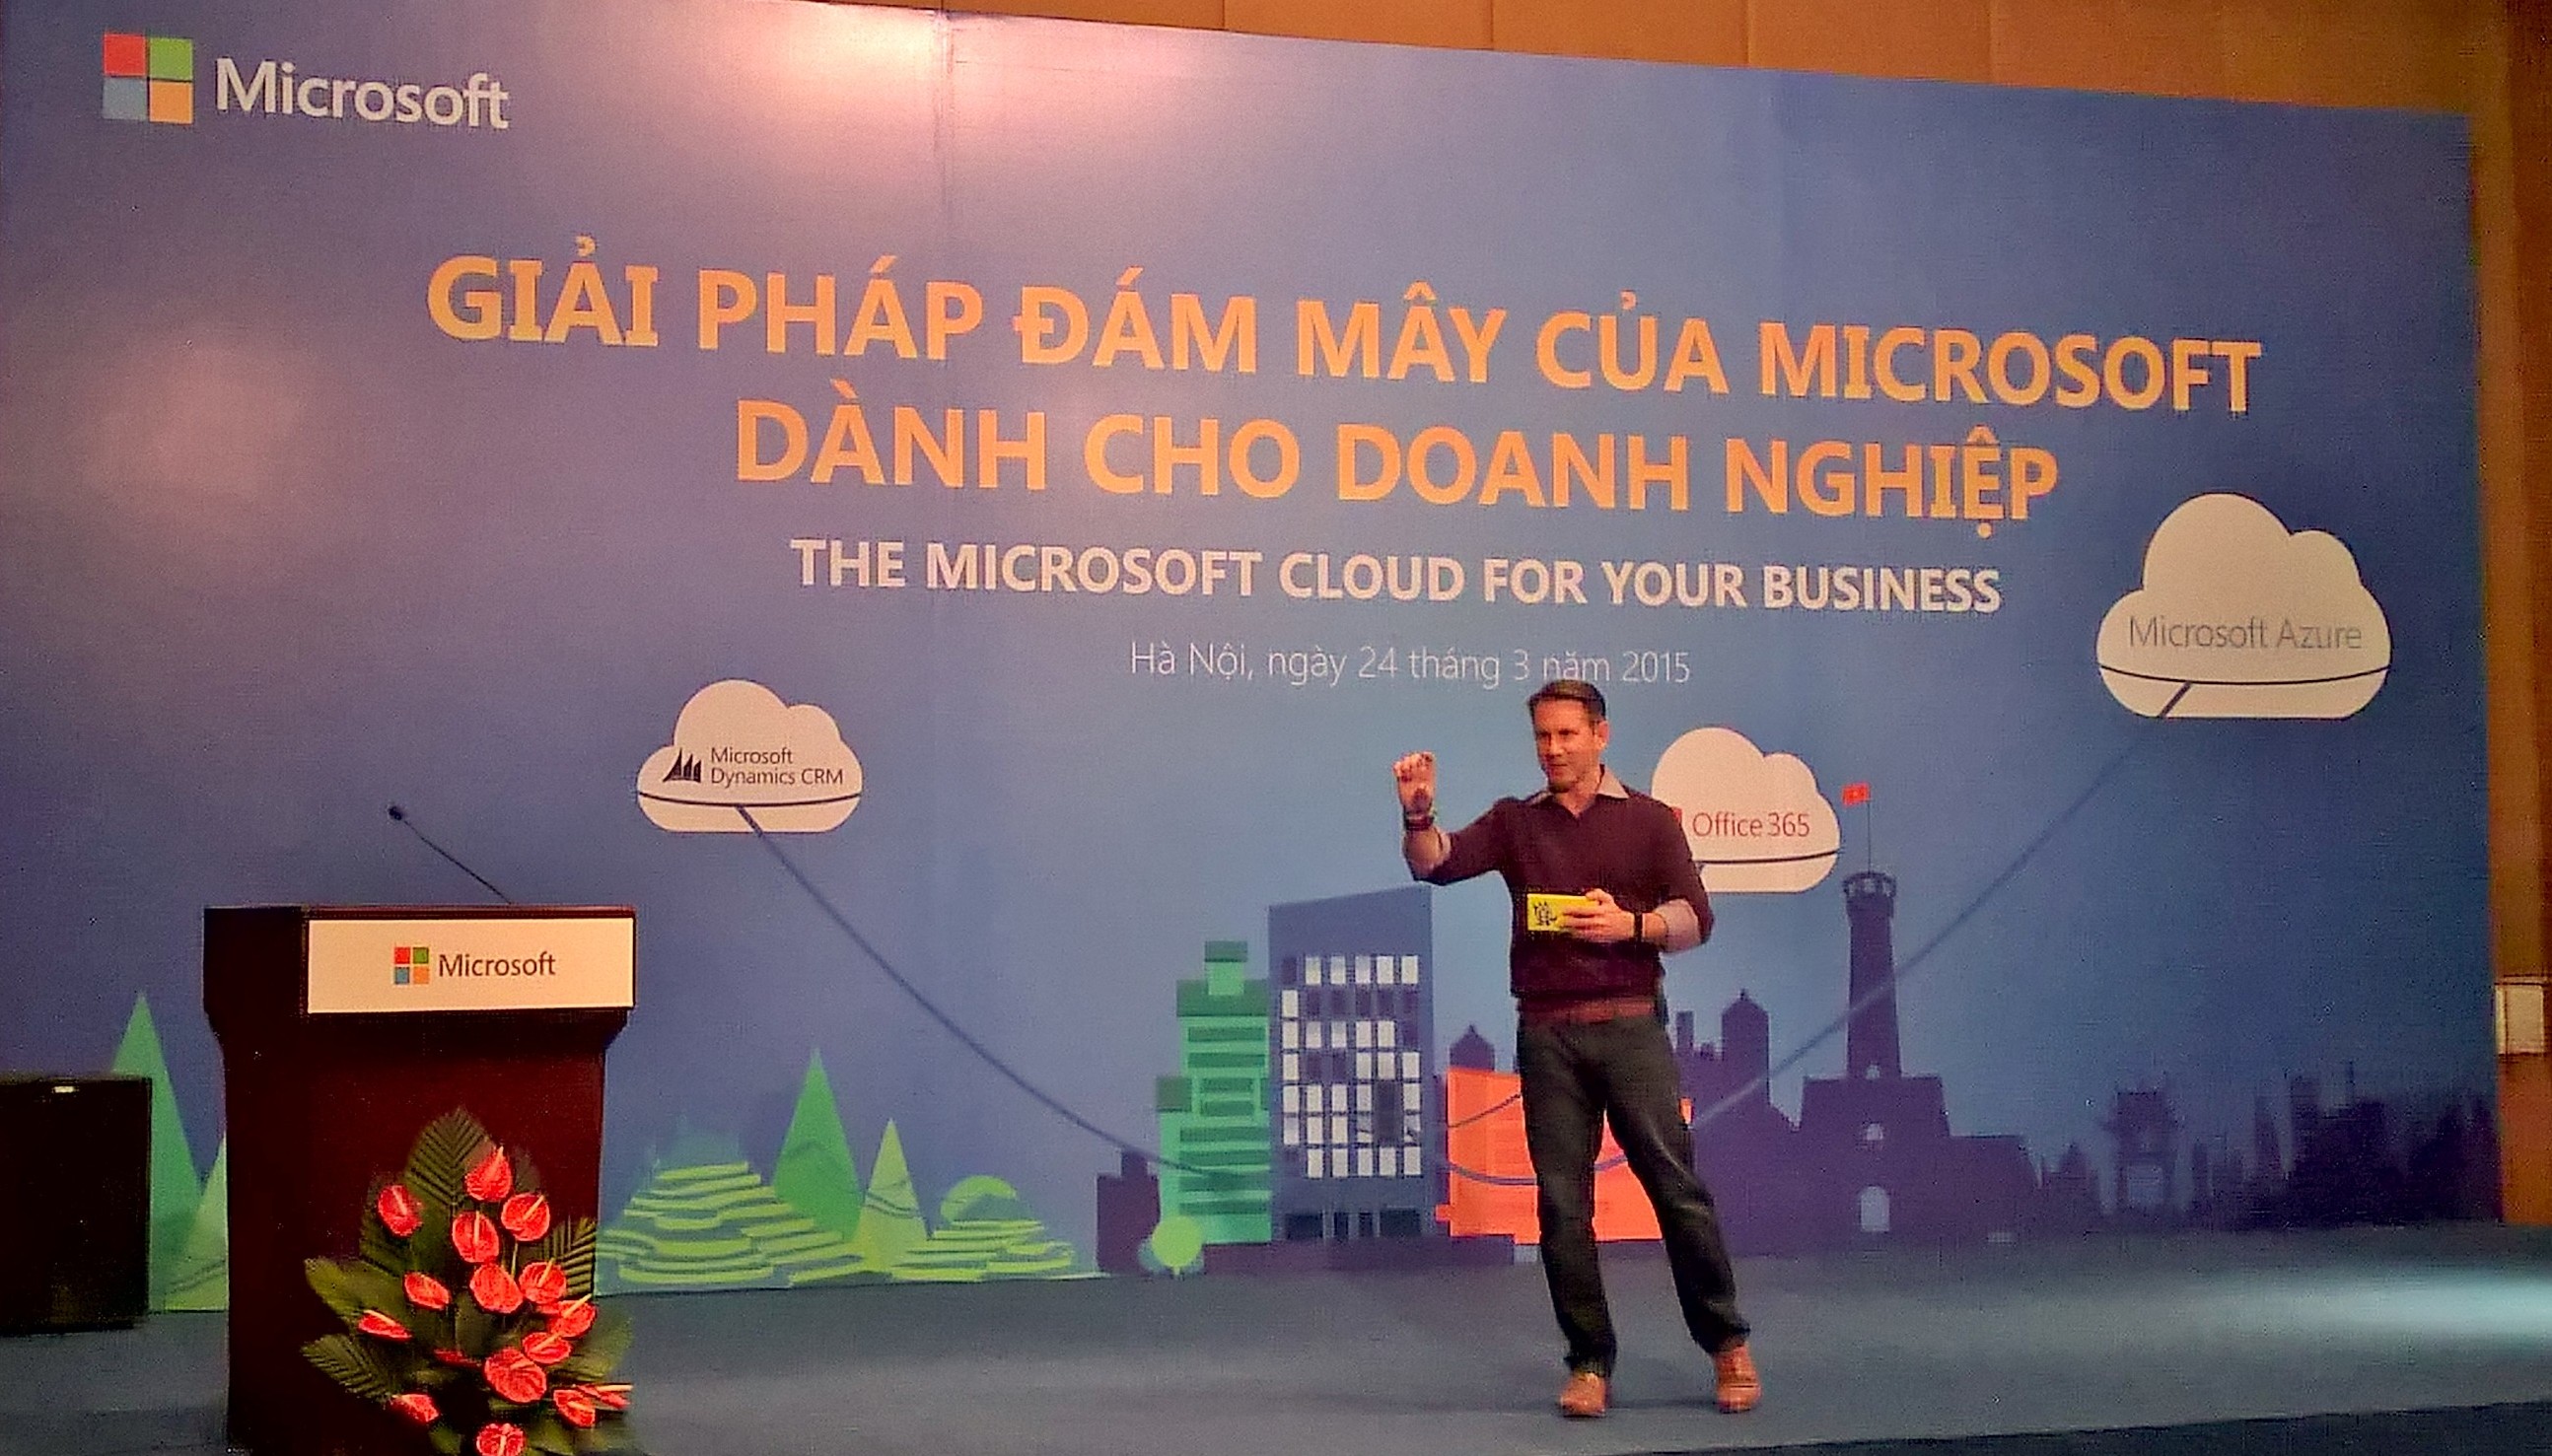 Microsoft luôn mong muốn hỗ trợ công nghệ giúp các doanh nghiệp Việt tăng năng suất chất lượng